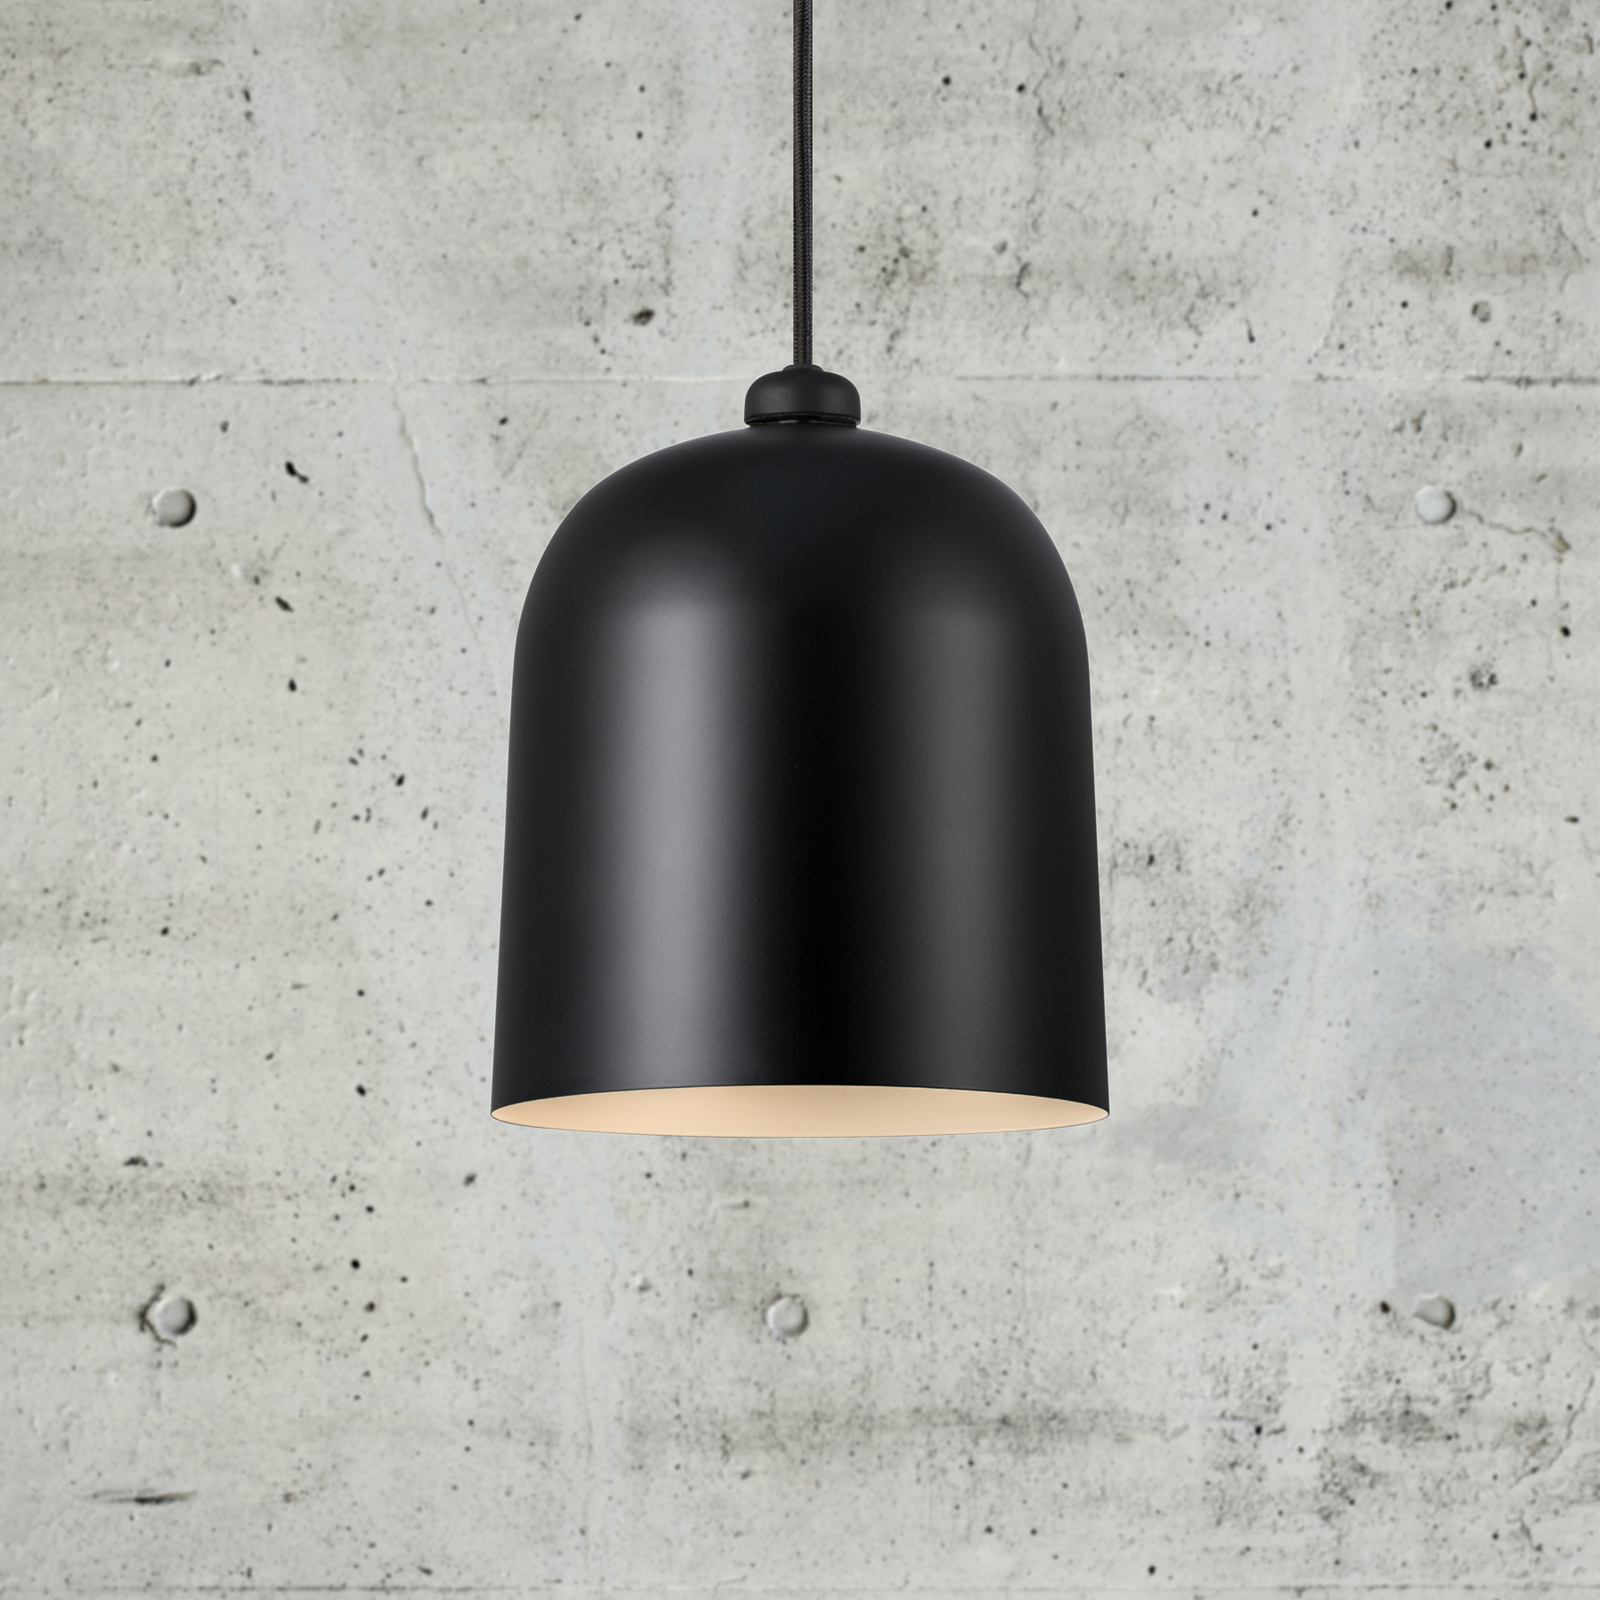 LED pendant light Angle, black